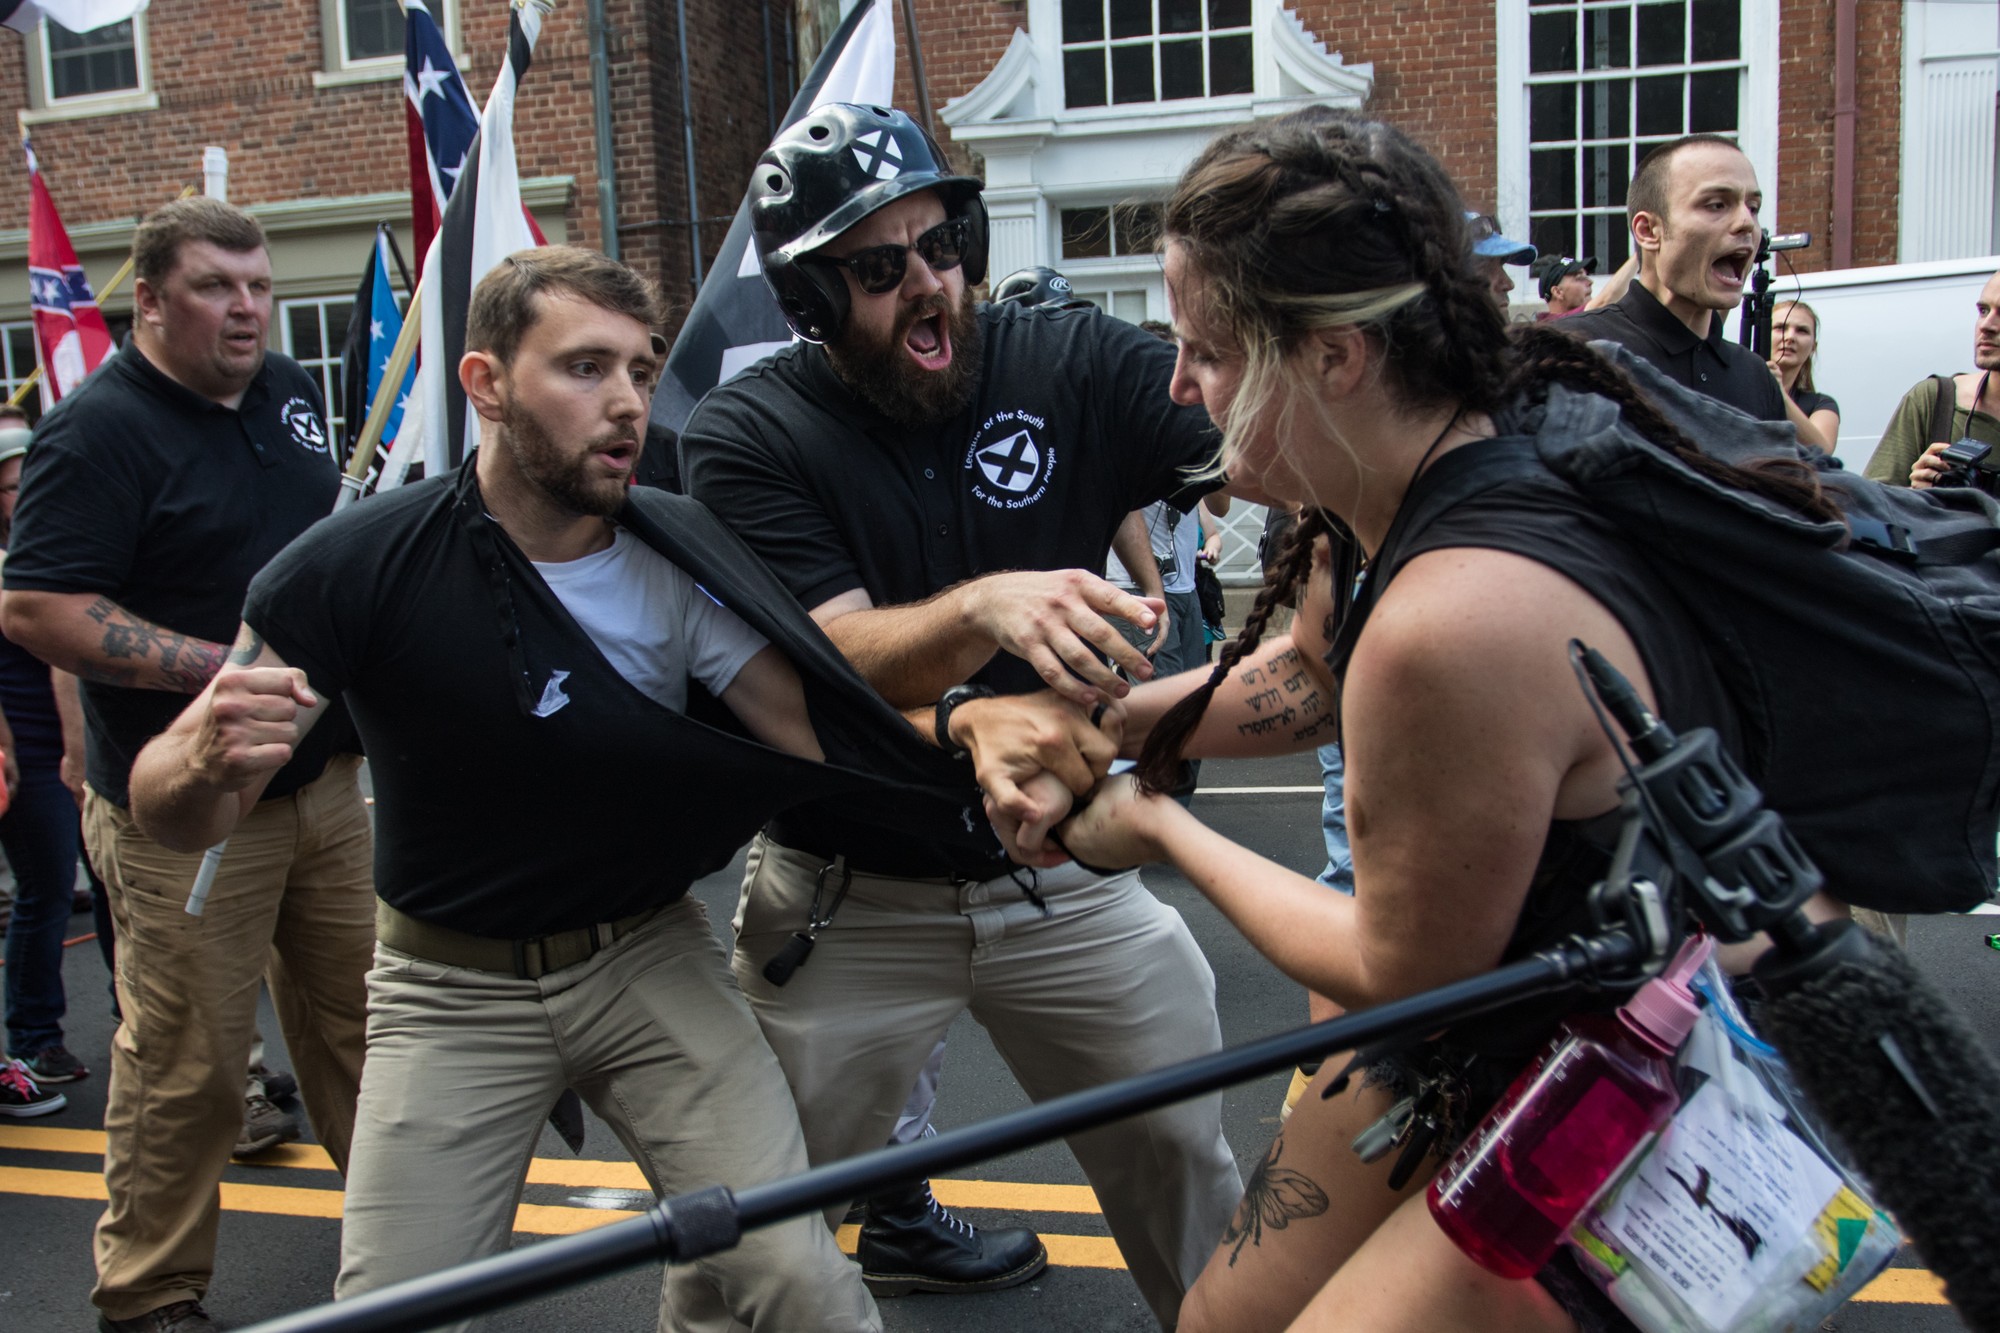 Opinion: Charlottesville exposes hidden hatred